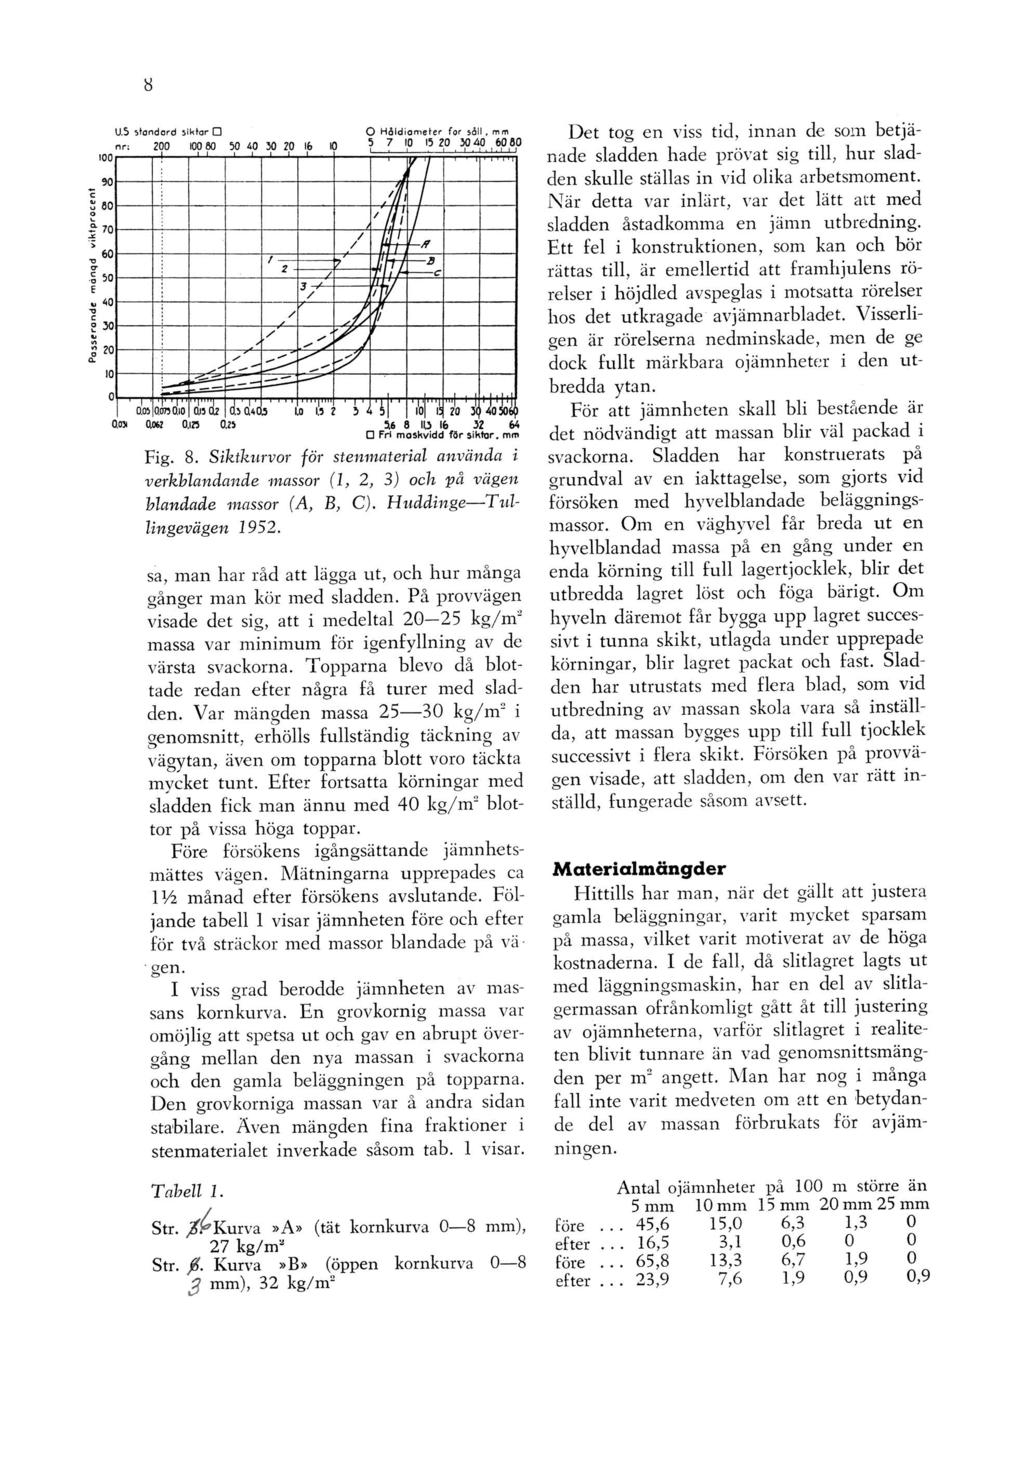 Fig. 8. Siktkurvor för stenmaterial använda i verkblandande massor (1, 2, 3) och pä vägen blandade massor (A, B, C). Huddinge Tullingevägen 1952.